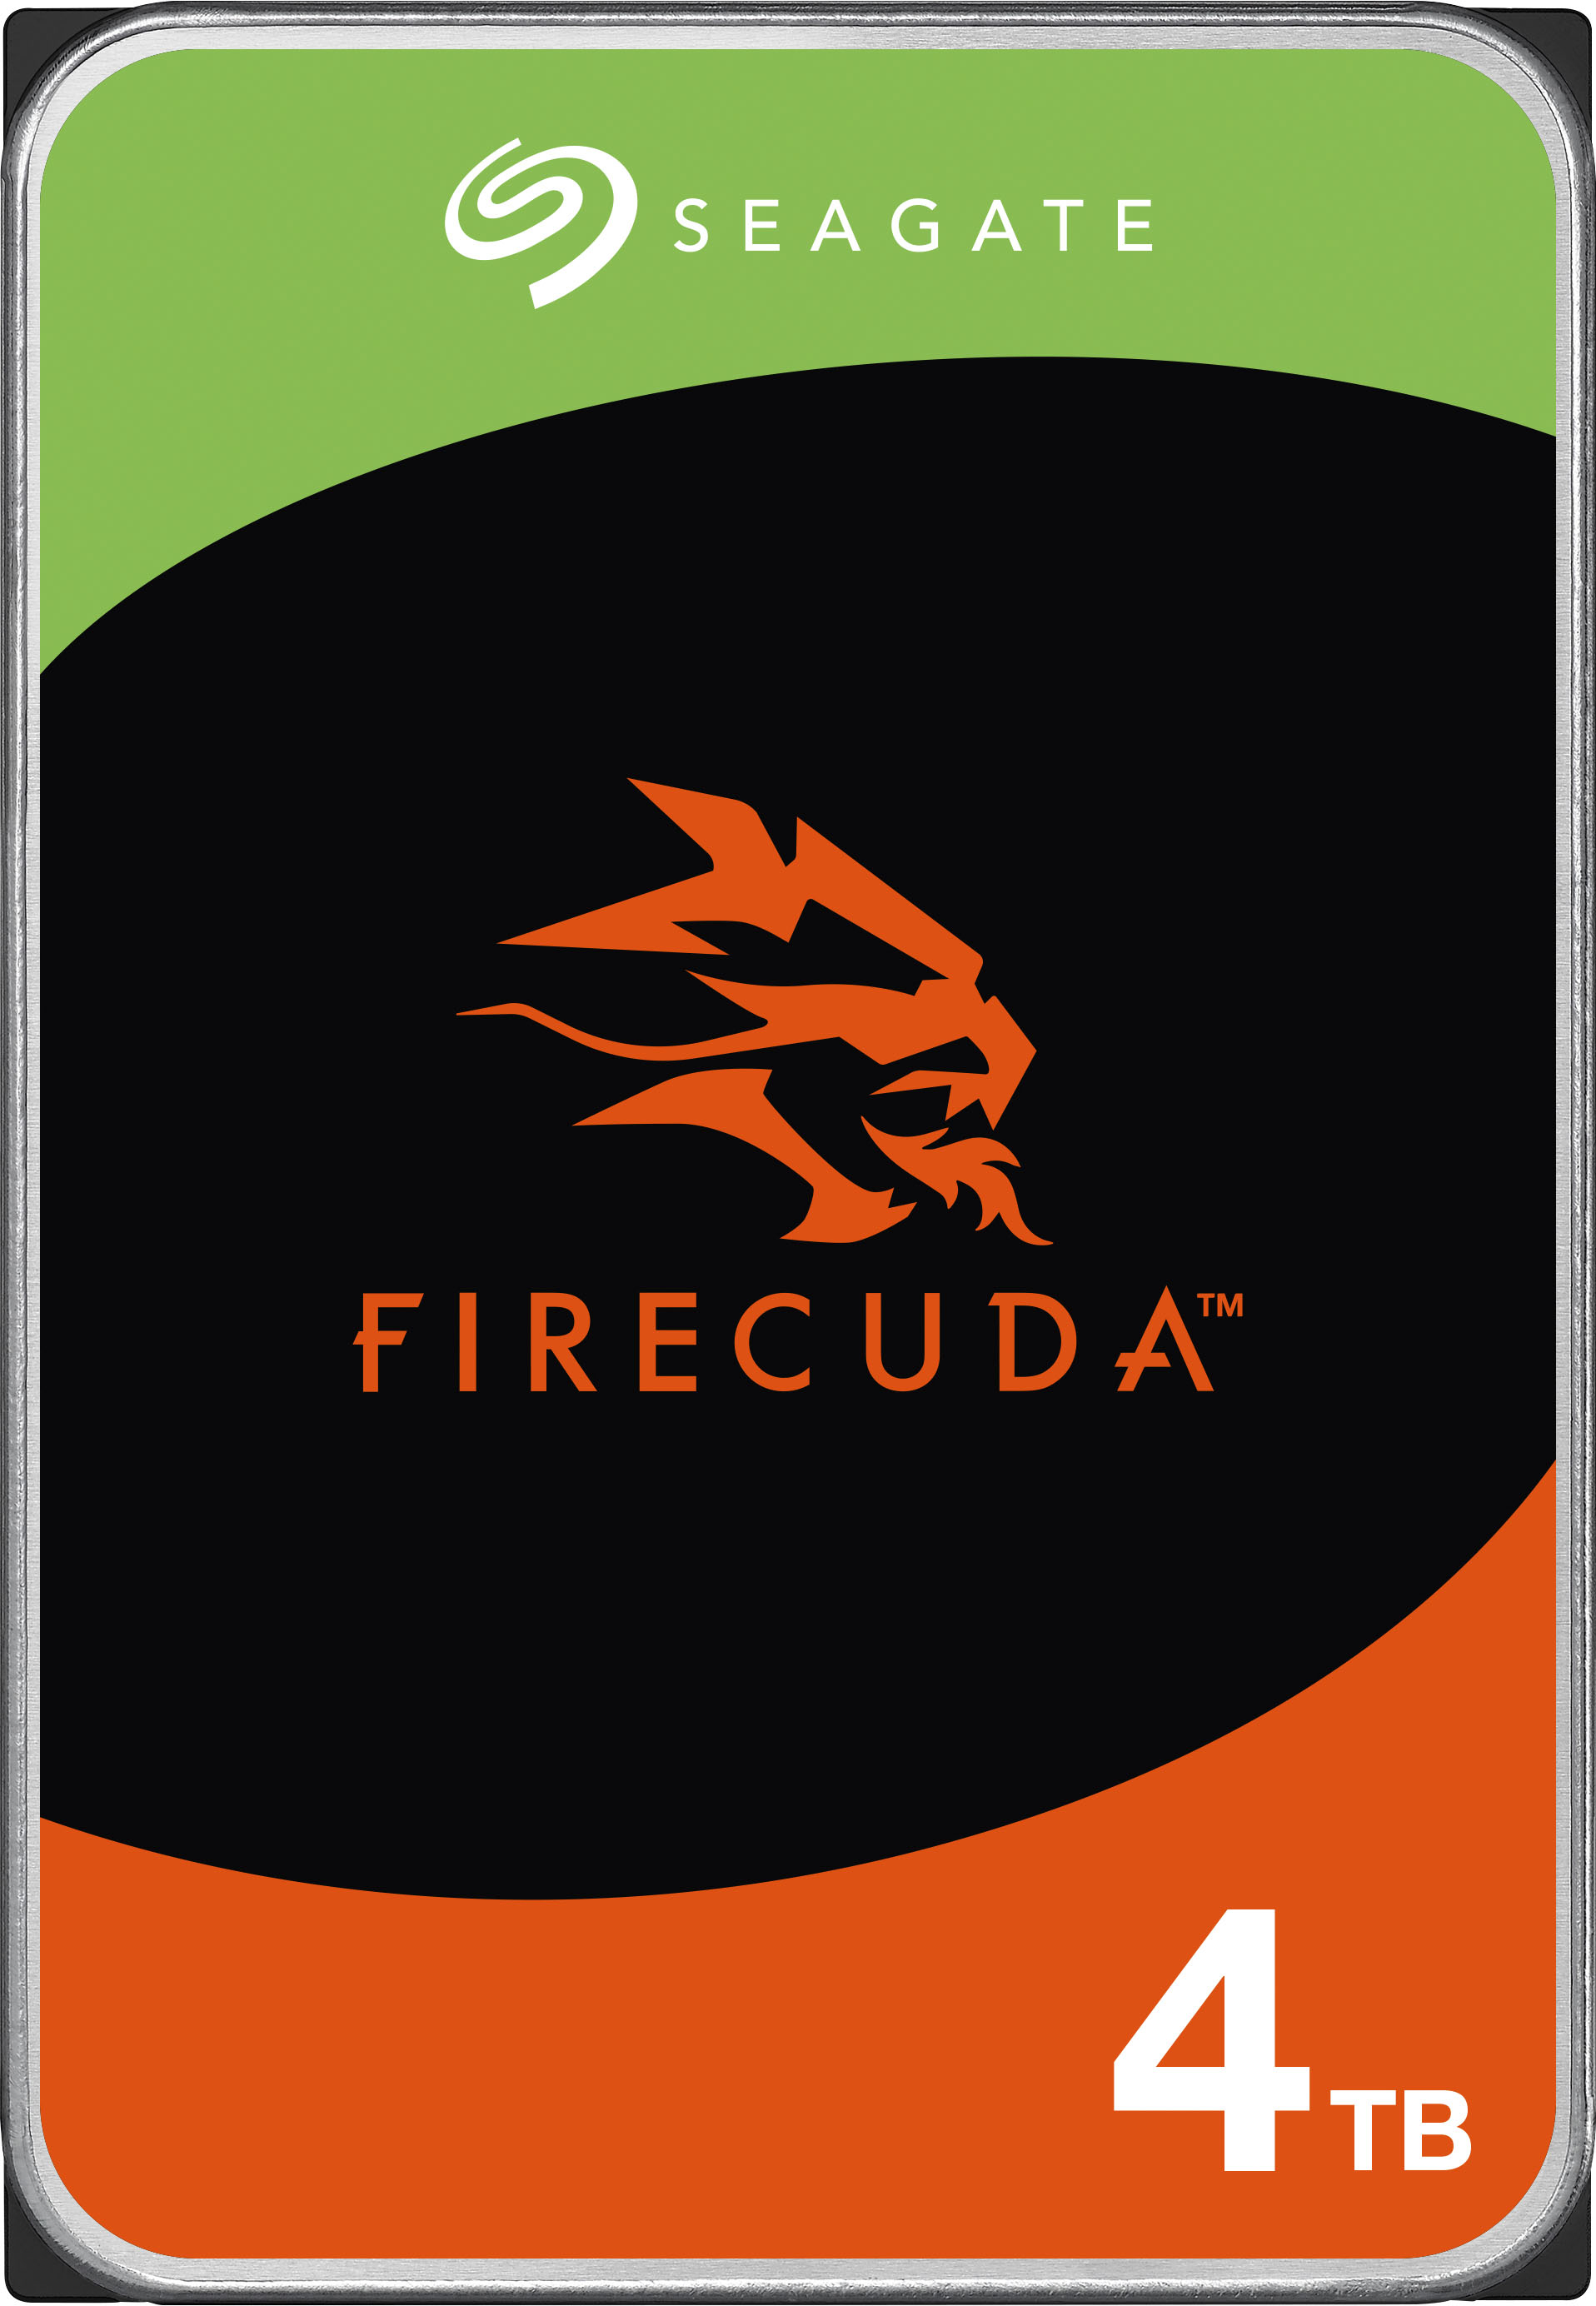 Seagate - FireCuda 4TB Internal SATA Hard Drive for Desktops